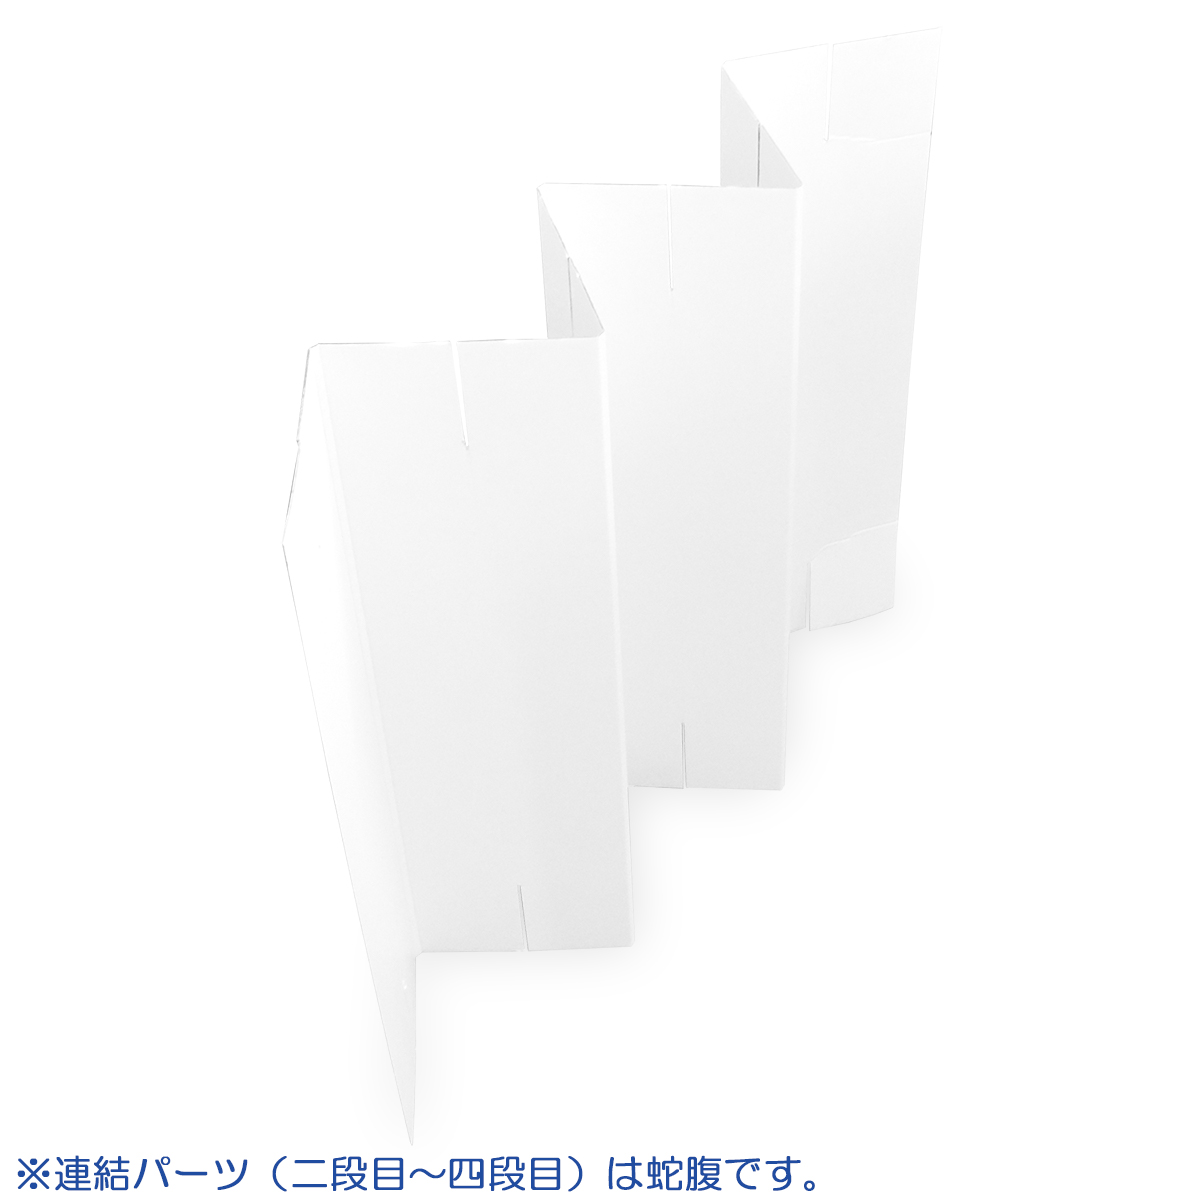  картон разделительный экран ( белый ) ( ширина 750mm× высота 1840mm) 1 комплект ( картон разделительный экран фон перегородка перегородка экран спрей чувство . предотвращение )